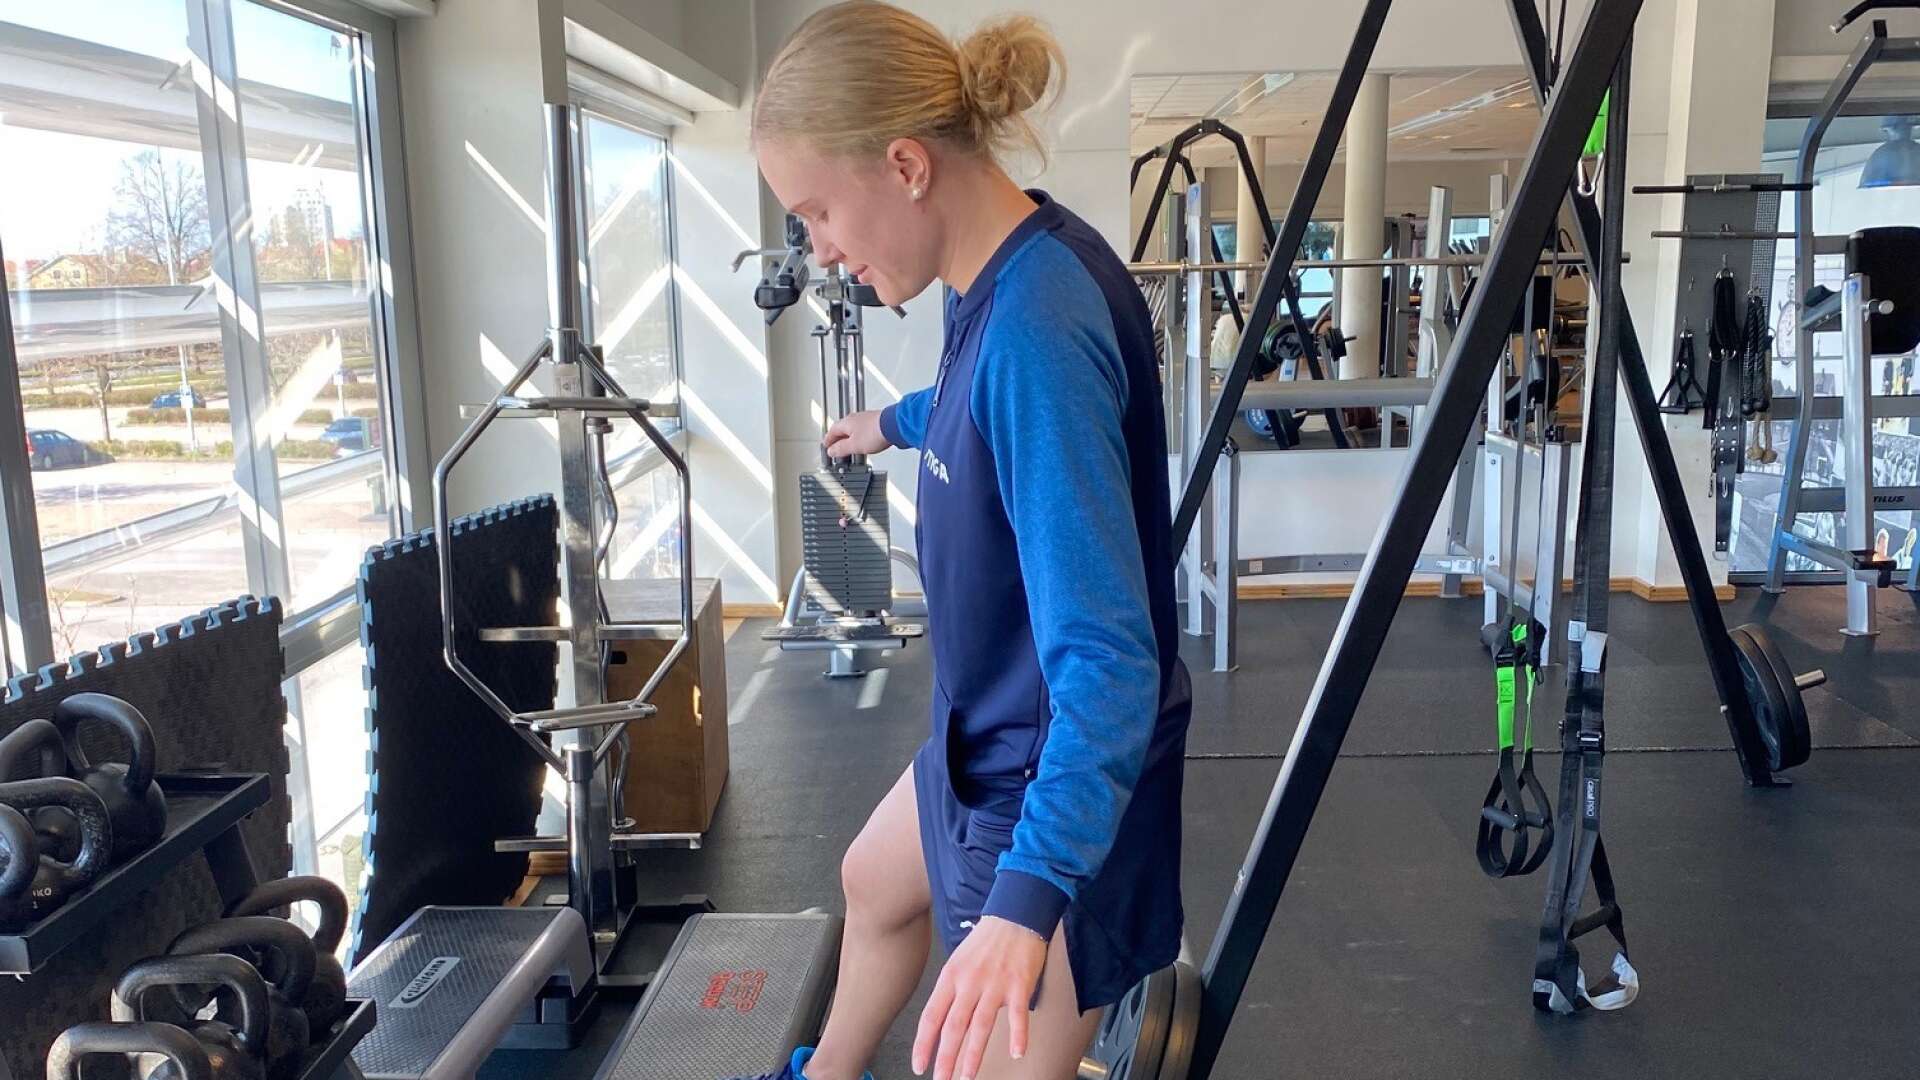 Alma Rööse tränar rehab tre gånger om dagen för att komma tillbaka från fotskadan hon ådrog sig i mars. En kamp mot klockan också då den svenska bordtennistruppen till OS tas ut i mitten av maj.